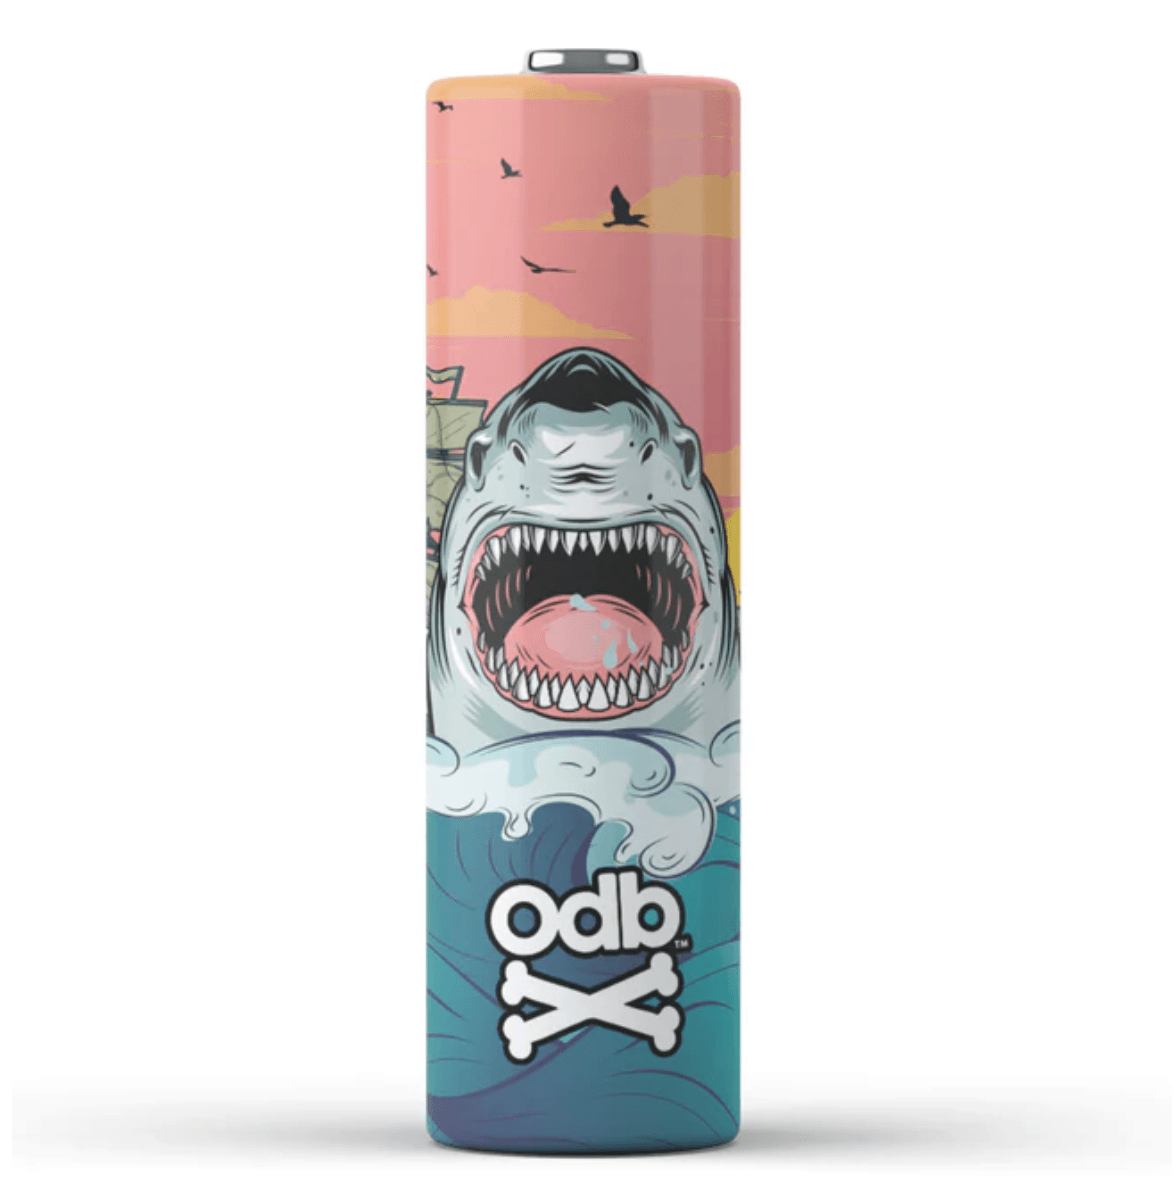 Sharky McShark - ODB 18650 Battery Wrap, [product_vandor]